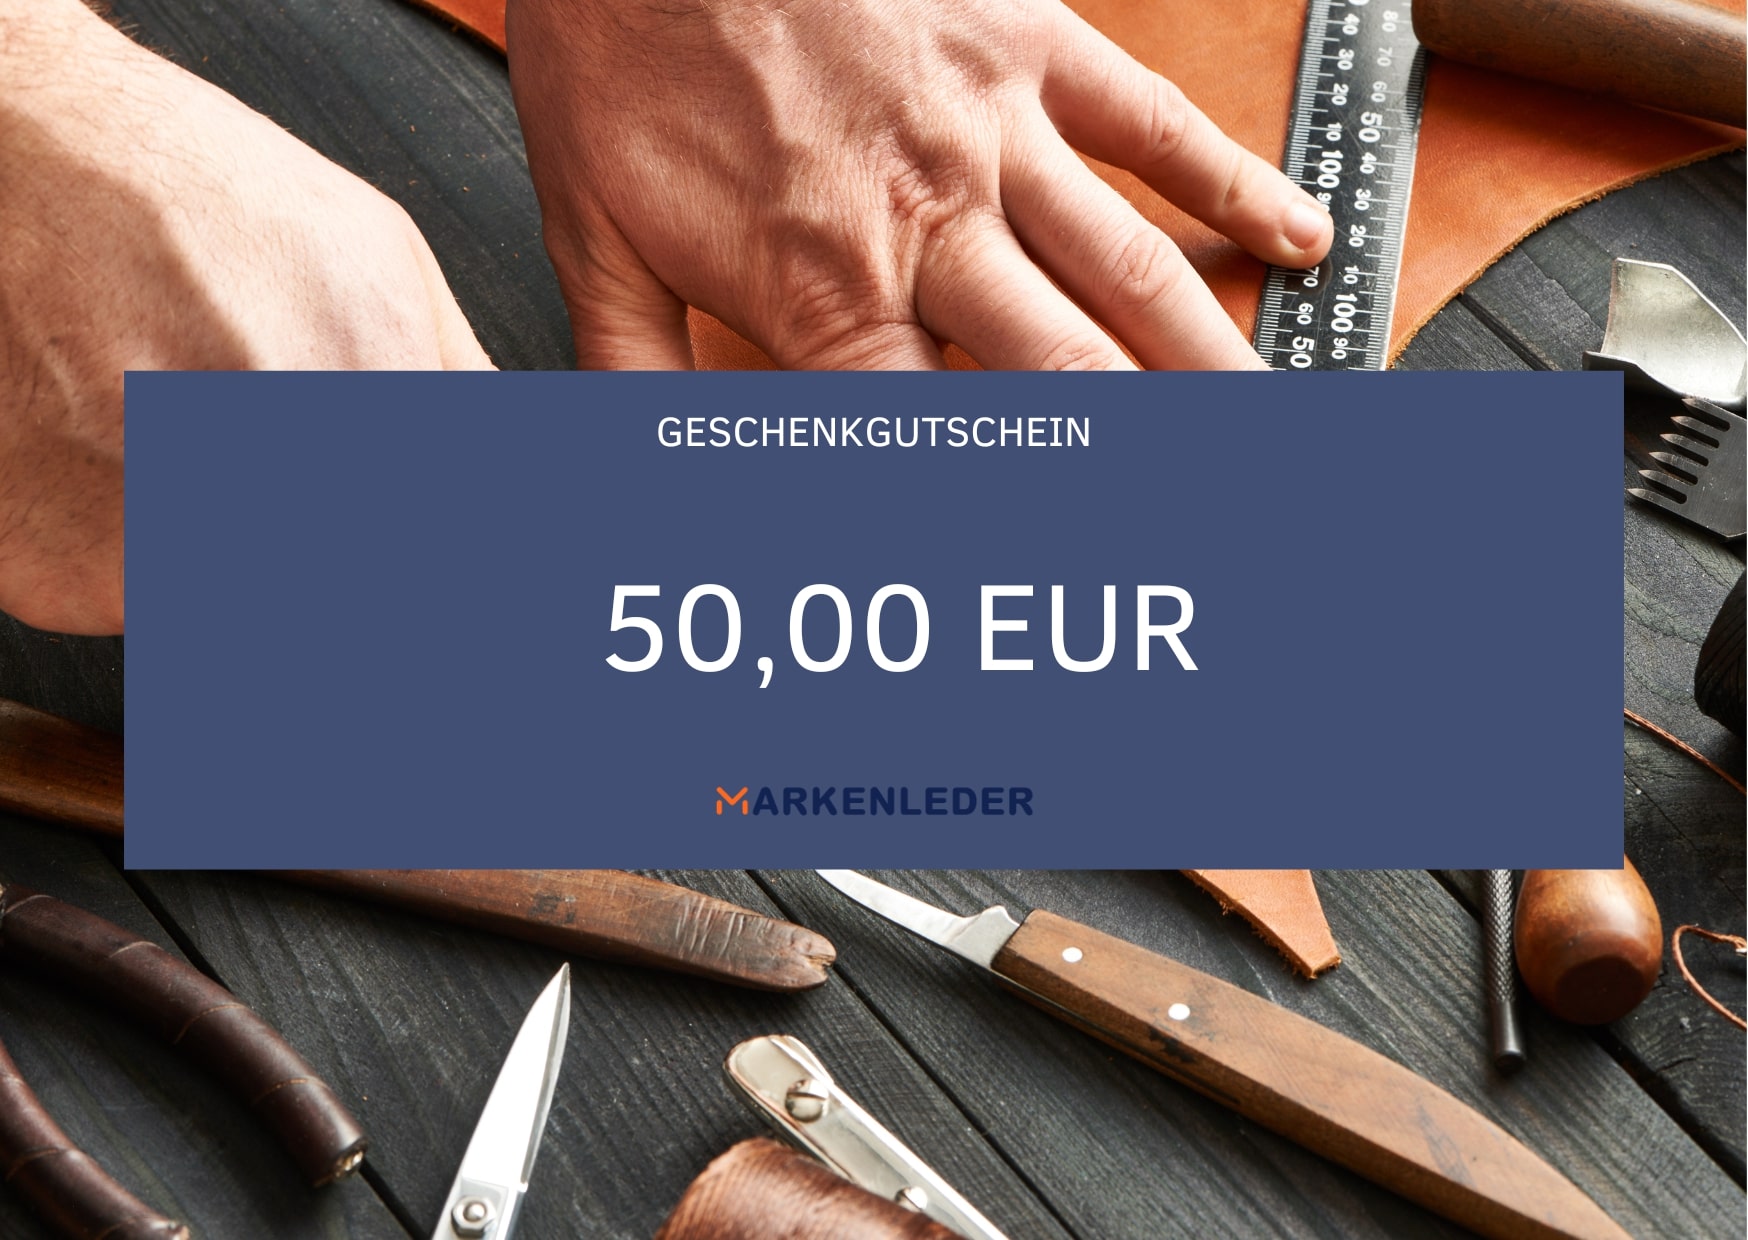 Geschenkgutschein 50,00 EUR